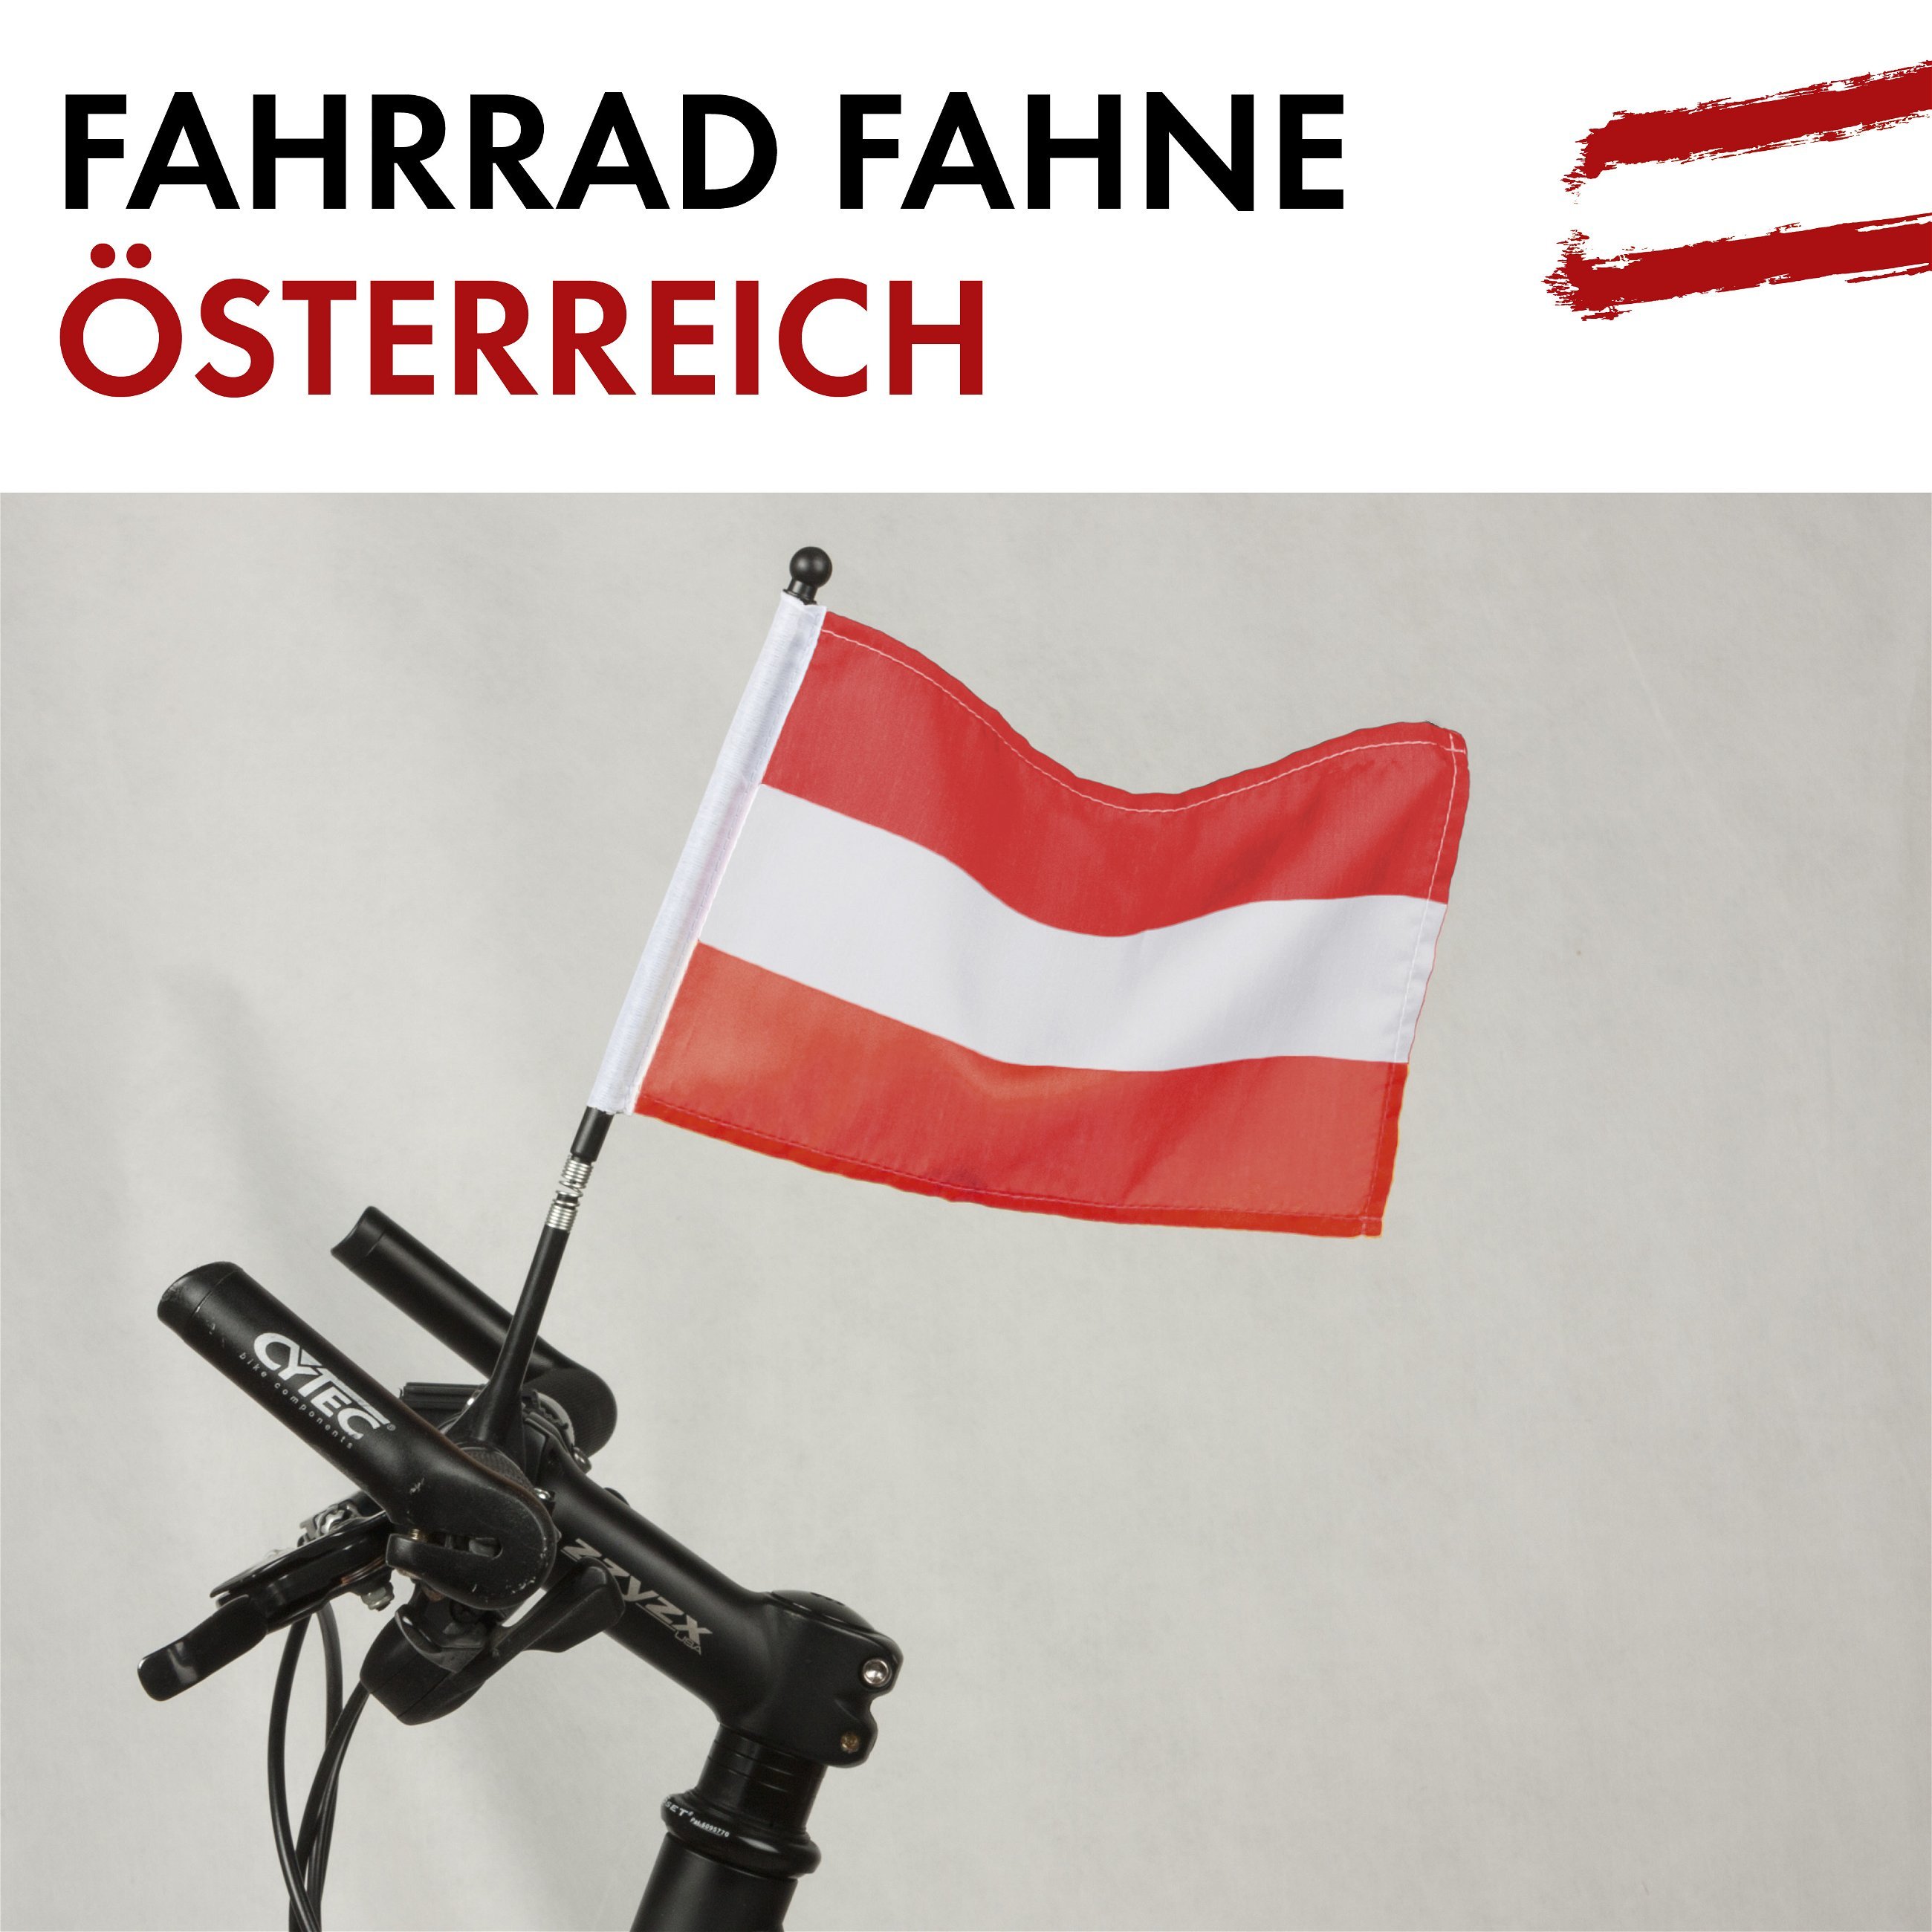 Fahrrad Fahne Österreich 21 x 16 cm